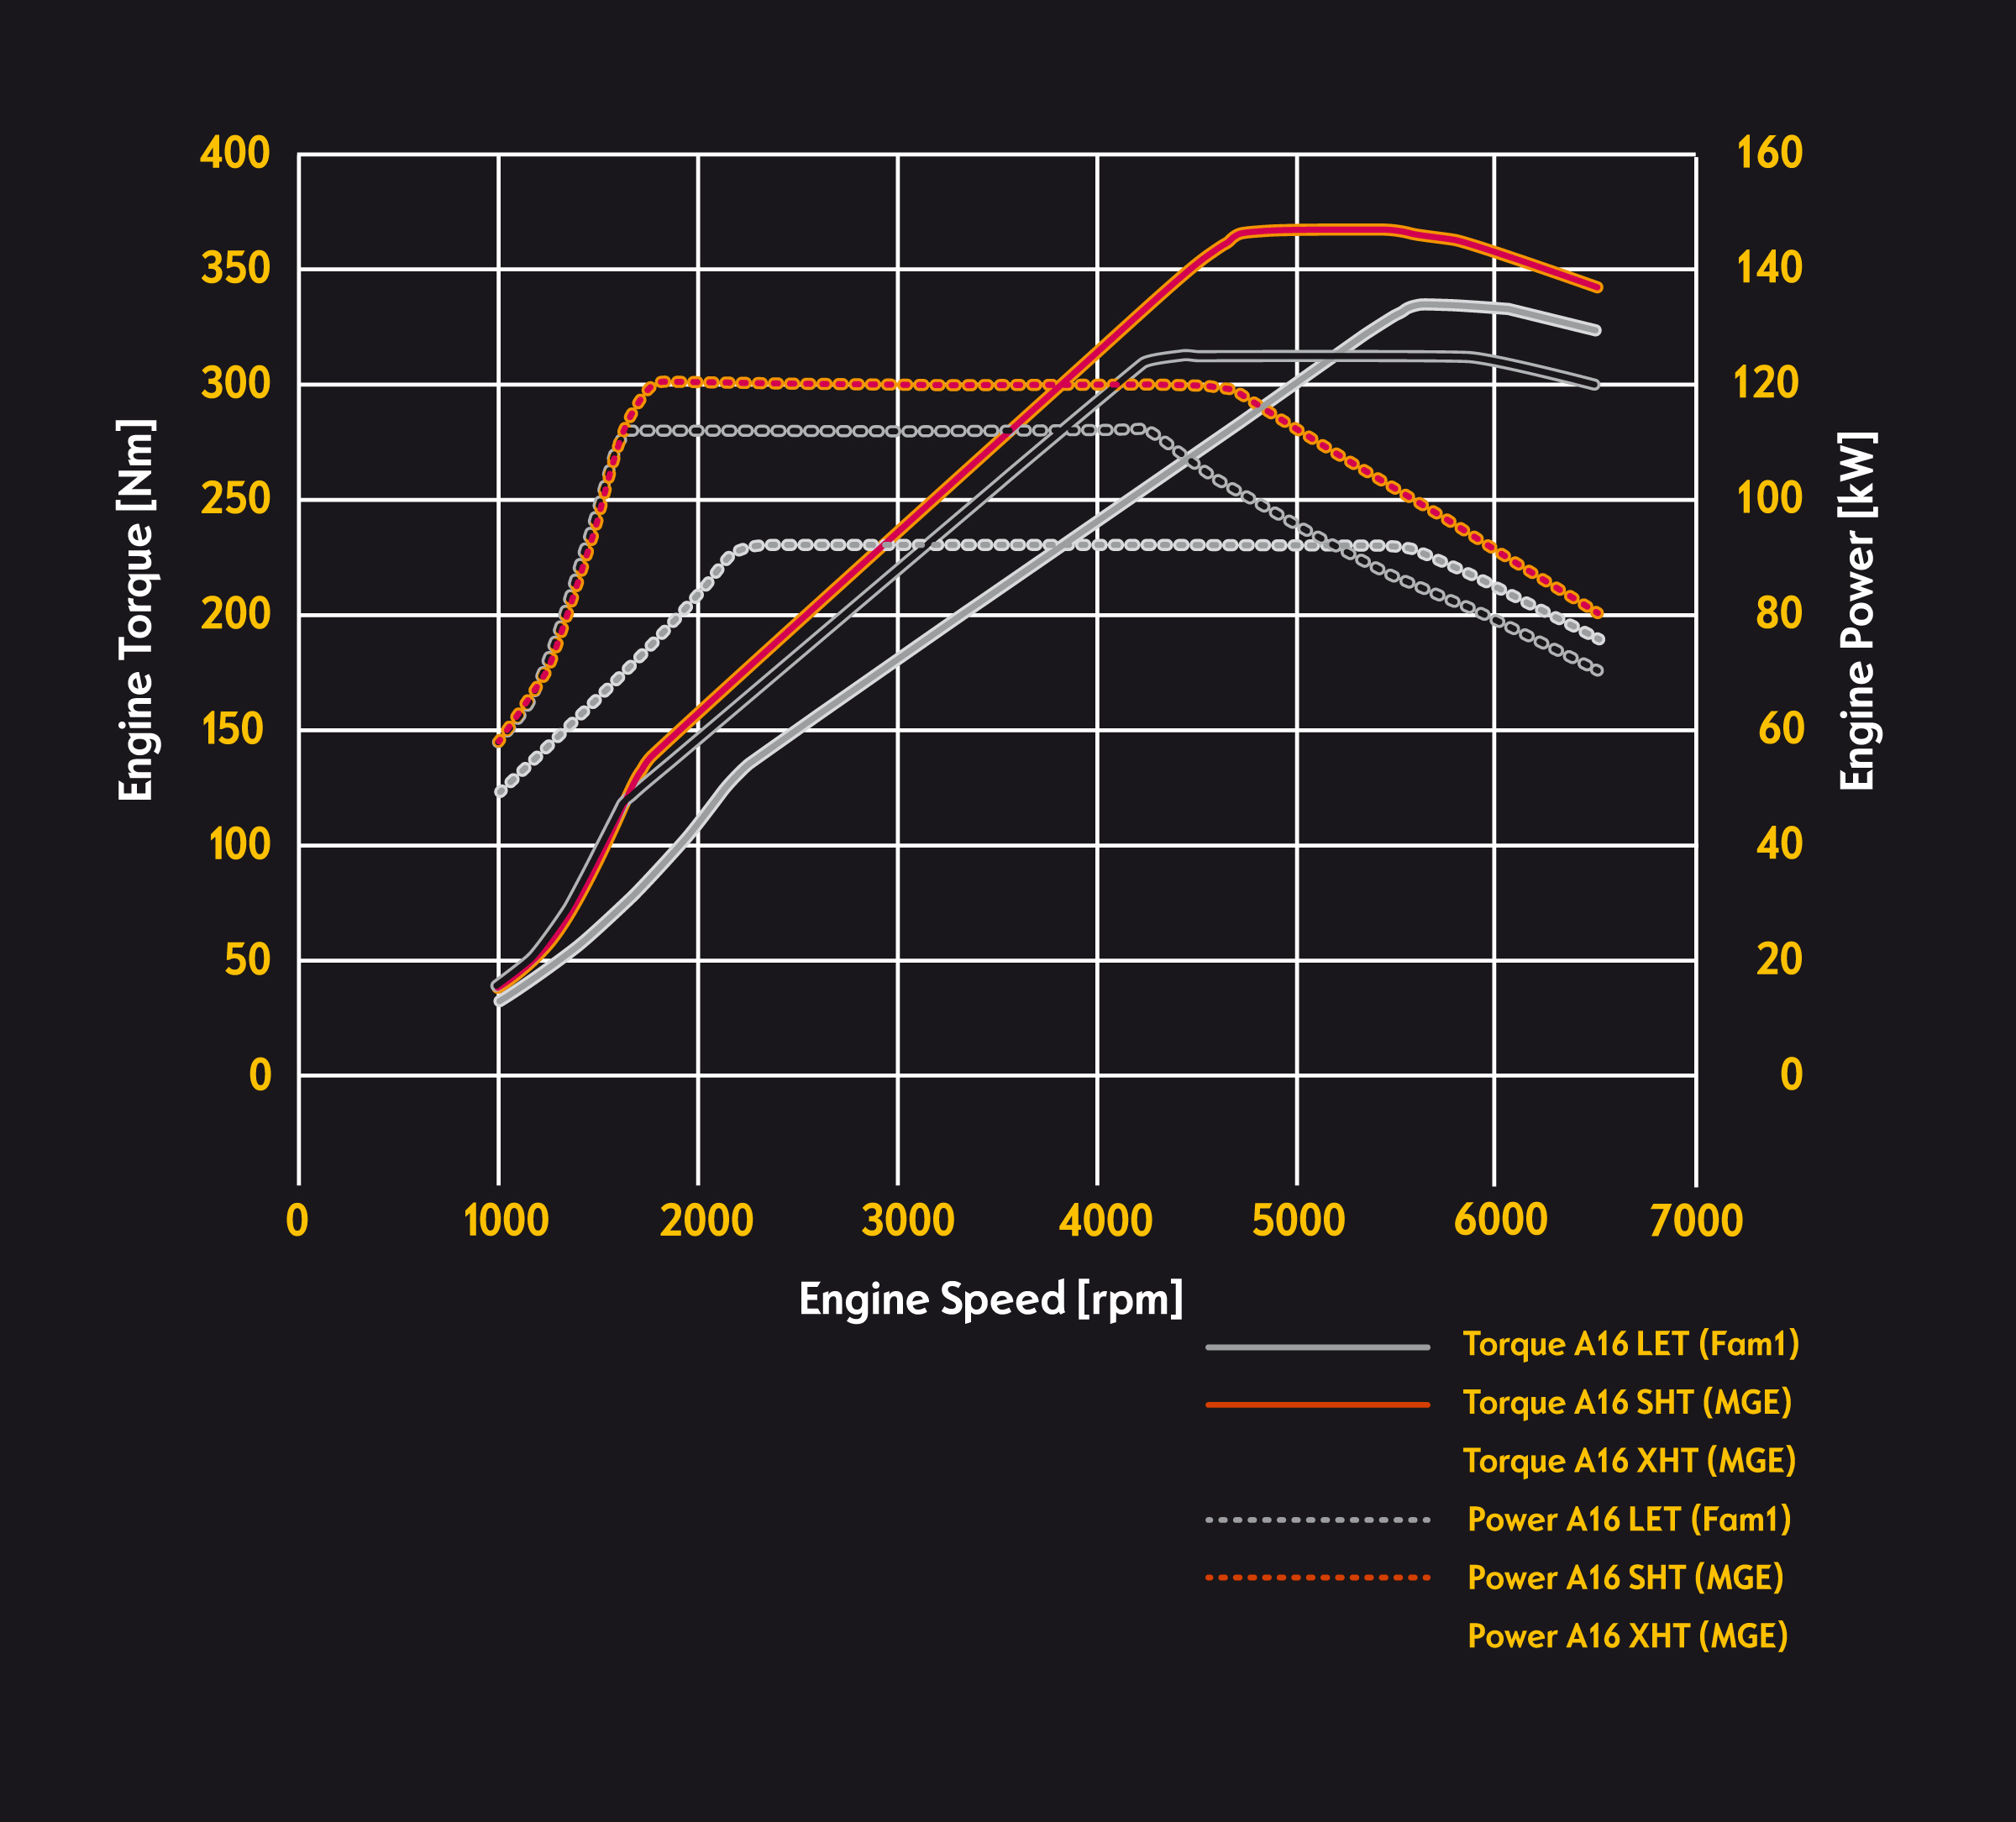 Opel 1.6 SIDI Turbo performance curves